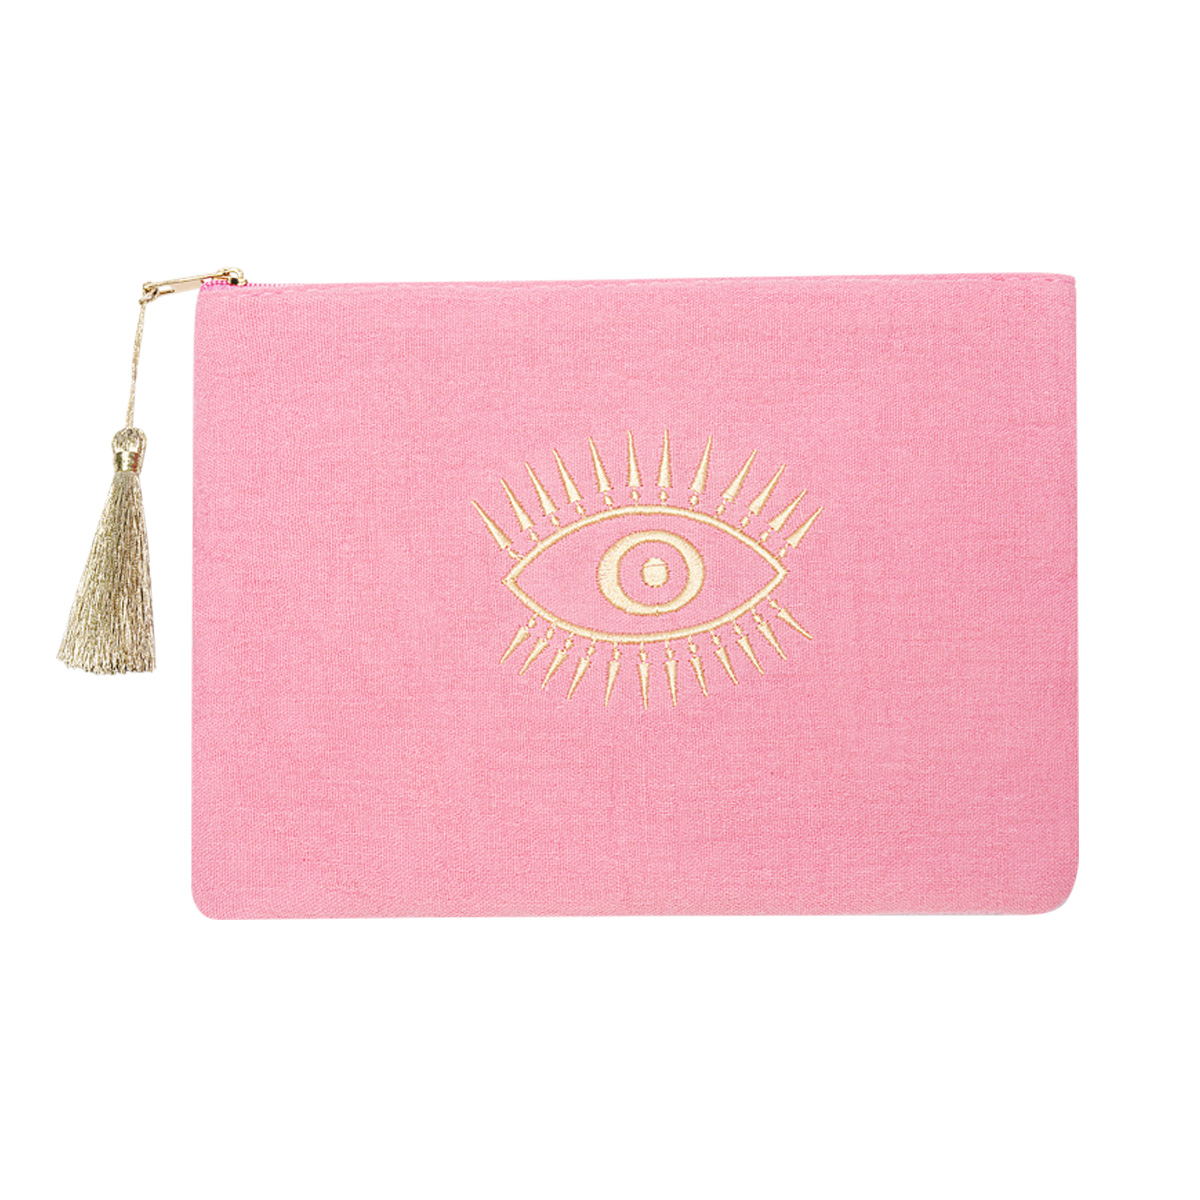 Make Up Tasje Eye roze pink etui gouden oog detail trendy tasjes kopen bestellen yehwang